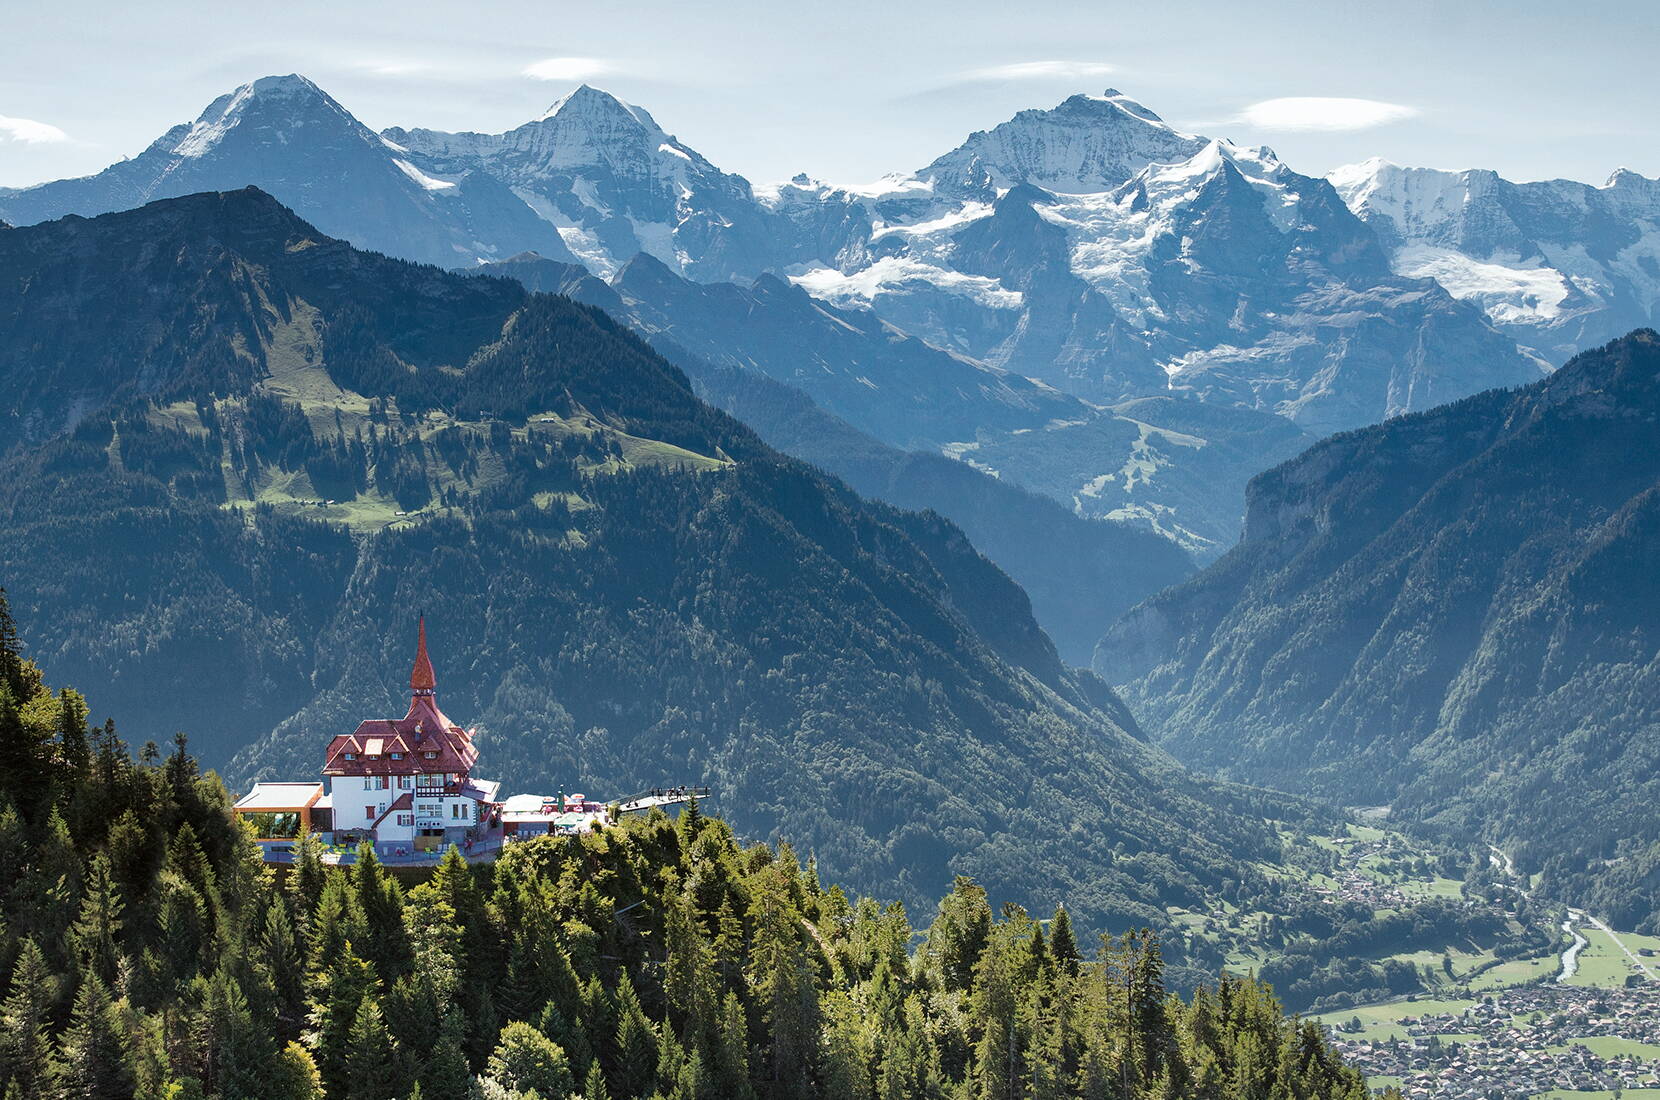 Le restaurant panoramique Harder Kulm trône au-dessus d'Interlaken, à 1'322 mètres d'altitude. En 10 minutes seulement, tu peux rejoindre le Harder Kulm en funiculaire depuis Interlaken. La plate-forme panoramique t'offre une vue unique sur l'Eiger, le Mönch et la Jungfrau, ainsi que sur les lacs de Thoune et de Brienz.